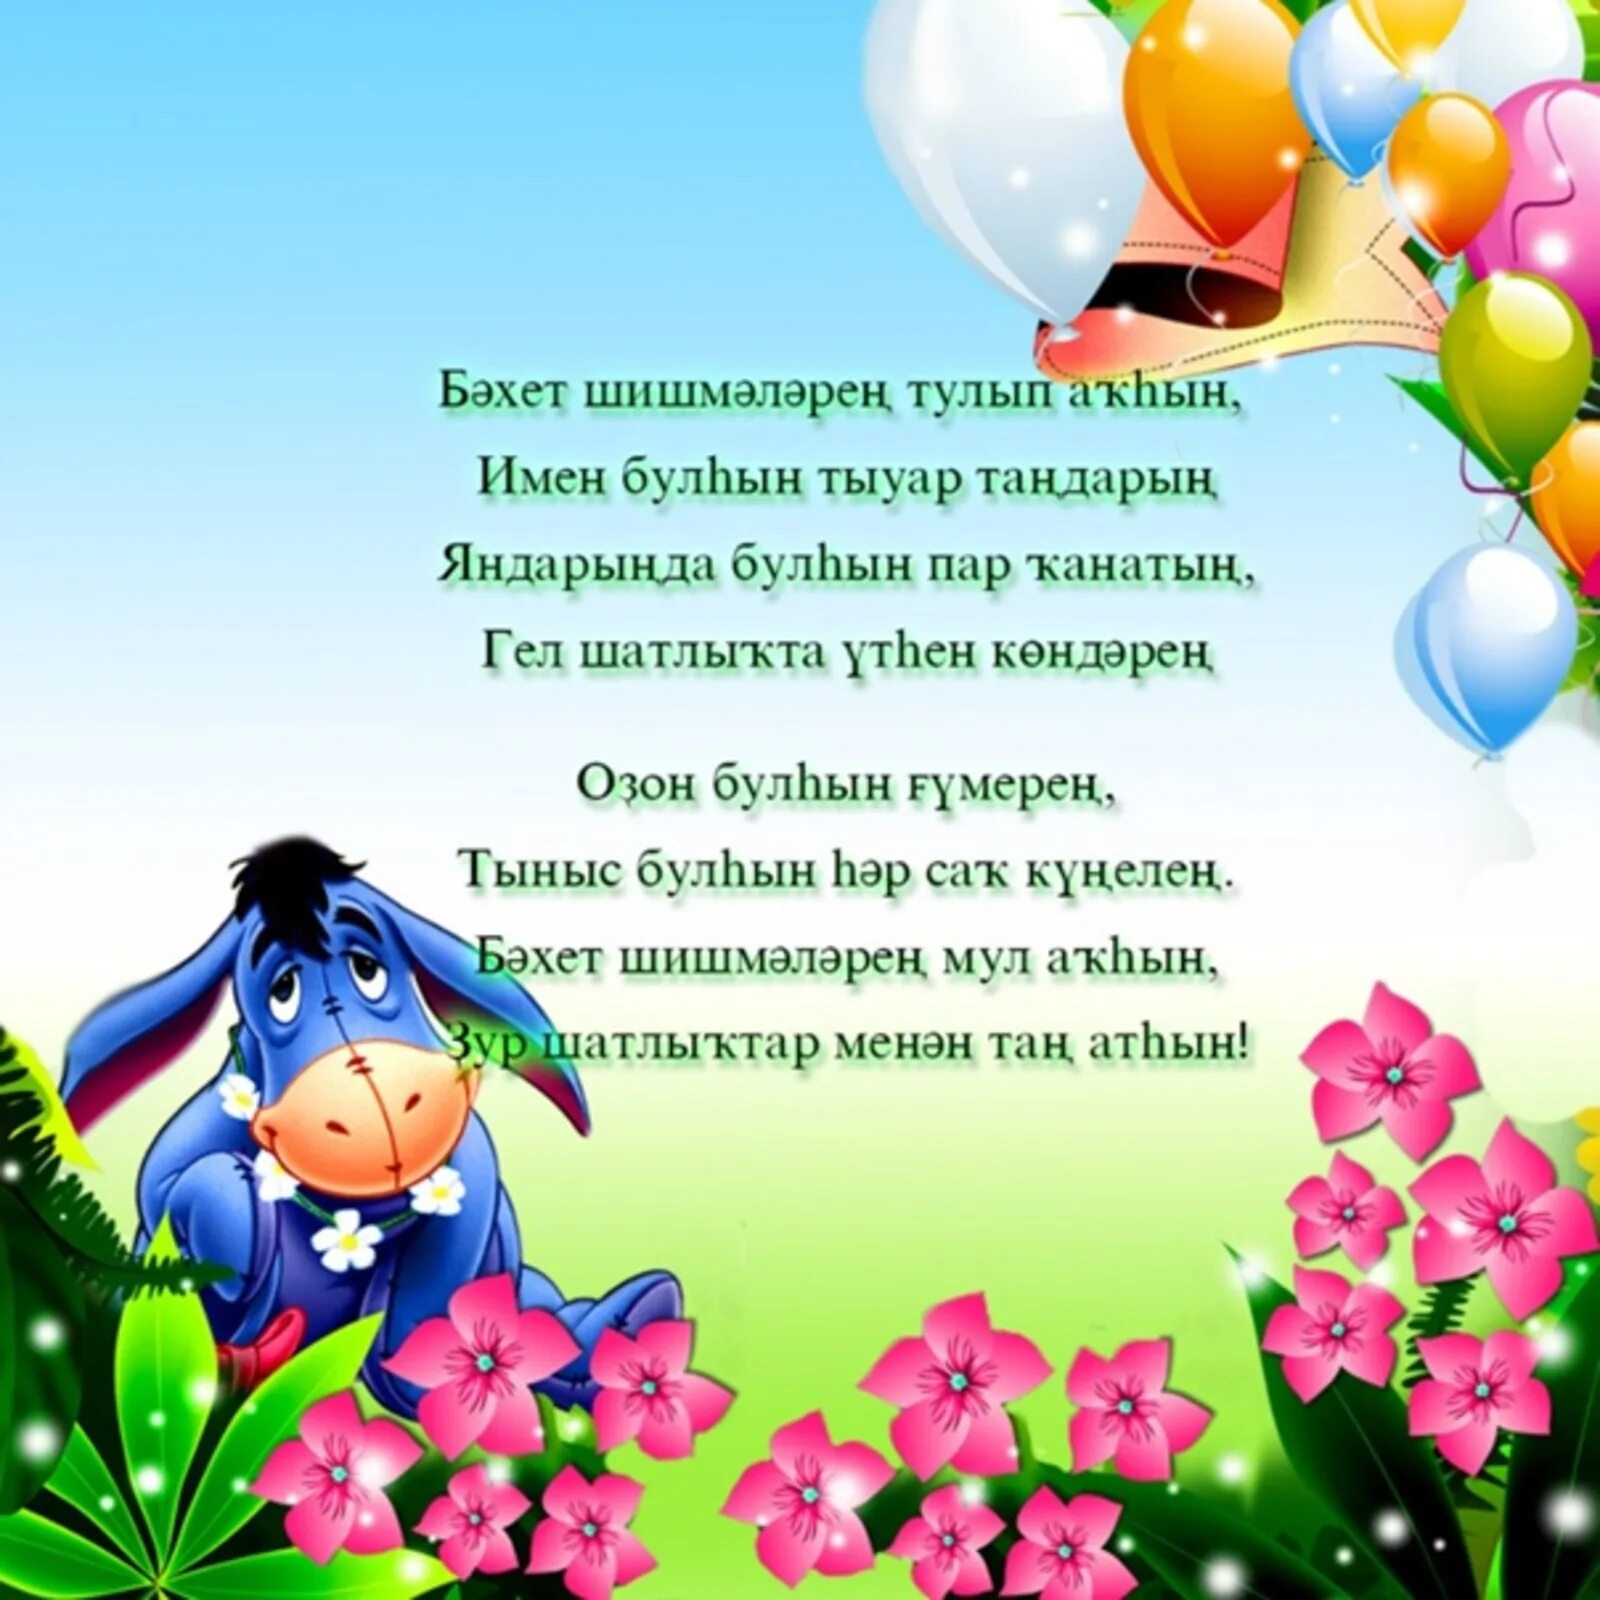 Башкирские пожелания на день рождения. Поздравления с днём рождения на башкирском языке. Поздравления с днём рождения женщине на башкирском языке. Открытки с днём рождения на башкирском. Открытки на башкирском языке.